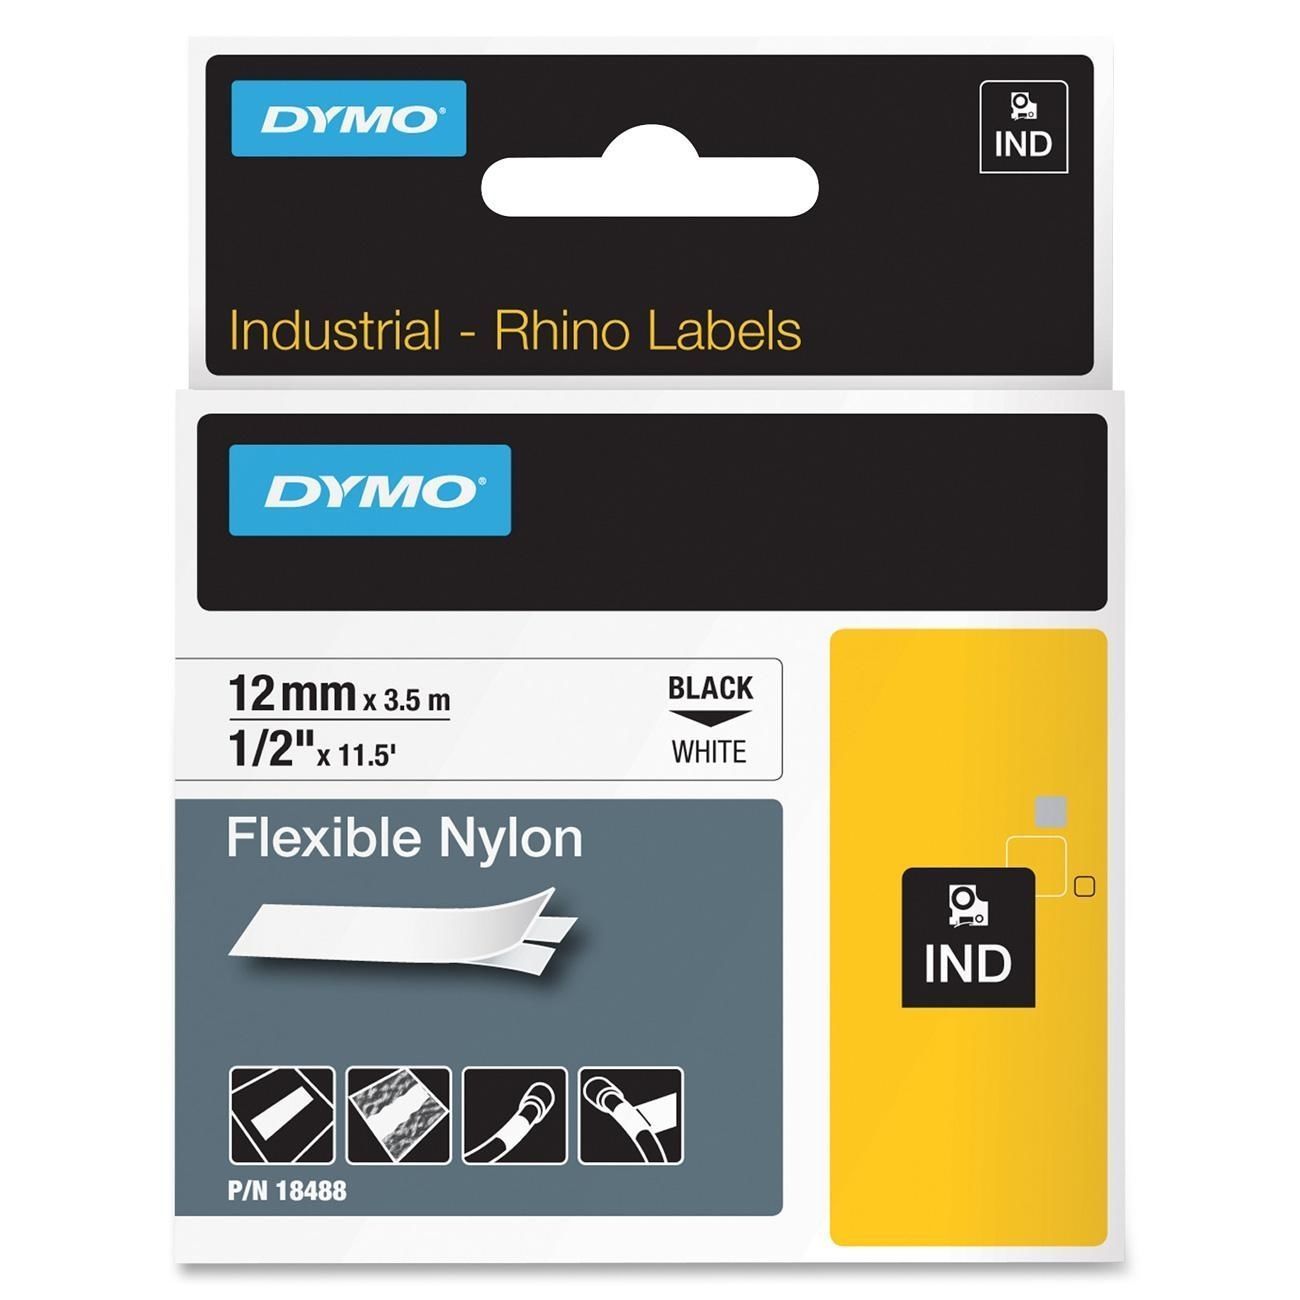 DYMO CINTA DE NYLON FLEXIBLE 1/2" x 11.5" - BLANCO